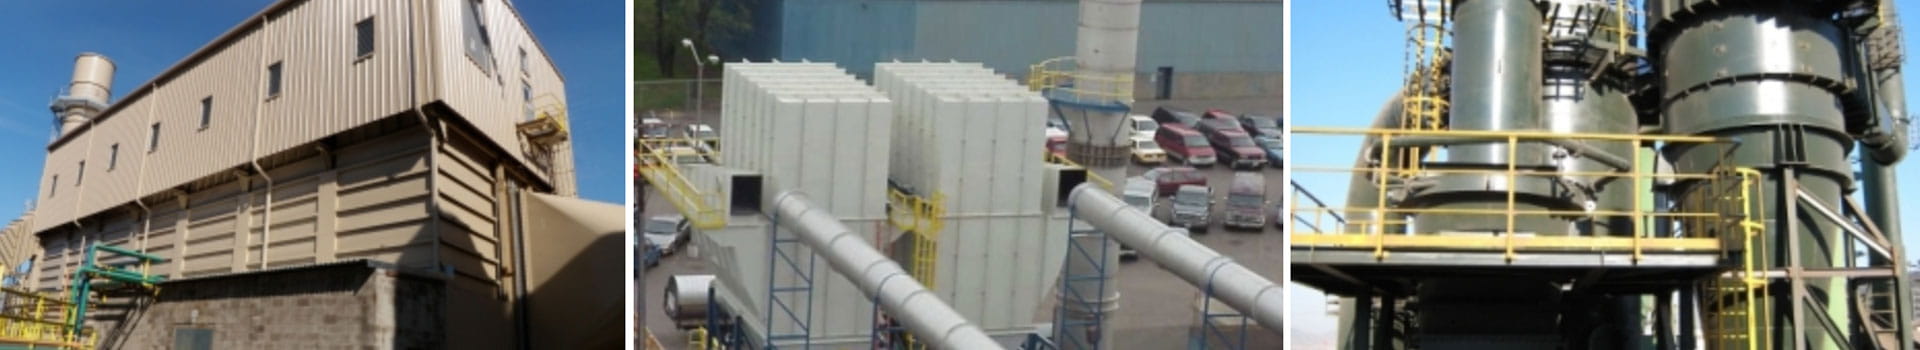 Rozwiązania do filtrowentylacji przemysłowej firmy Nederman zapewniają czyste powietrze podczas produkcji